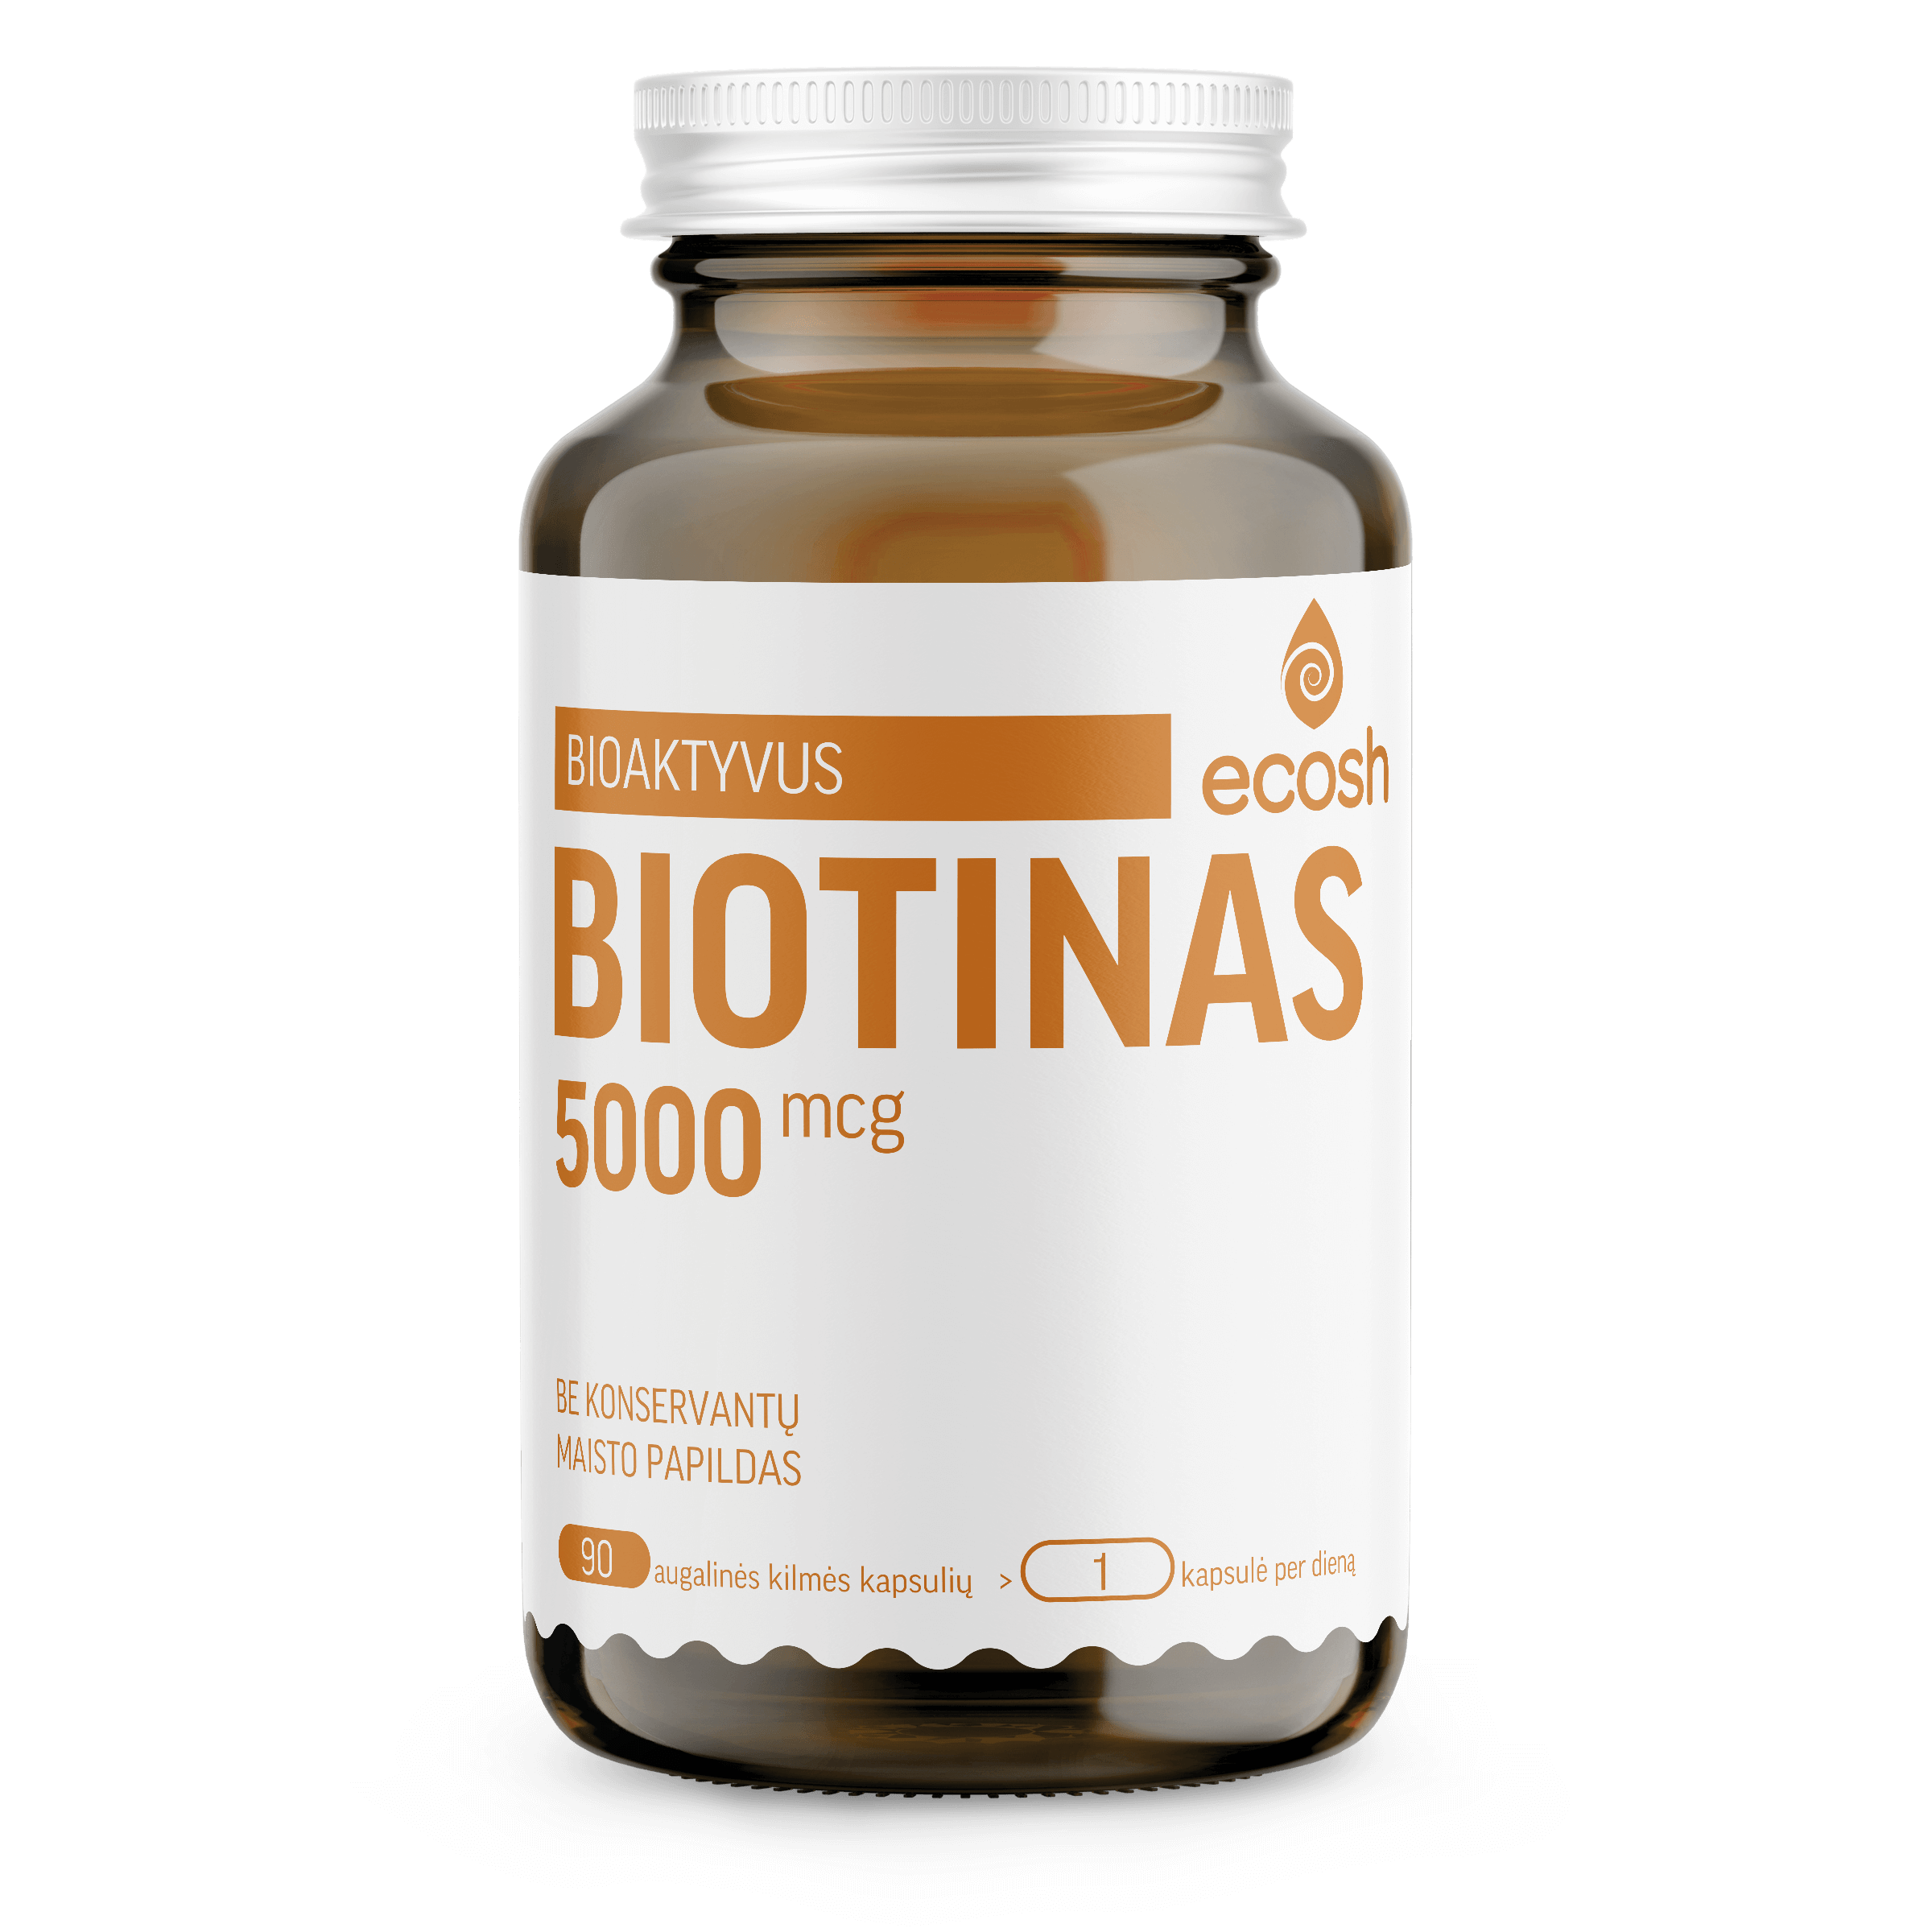 Bioaktyvus biotinas